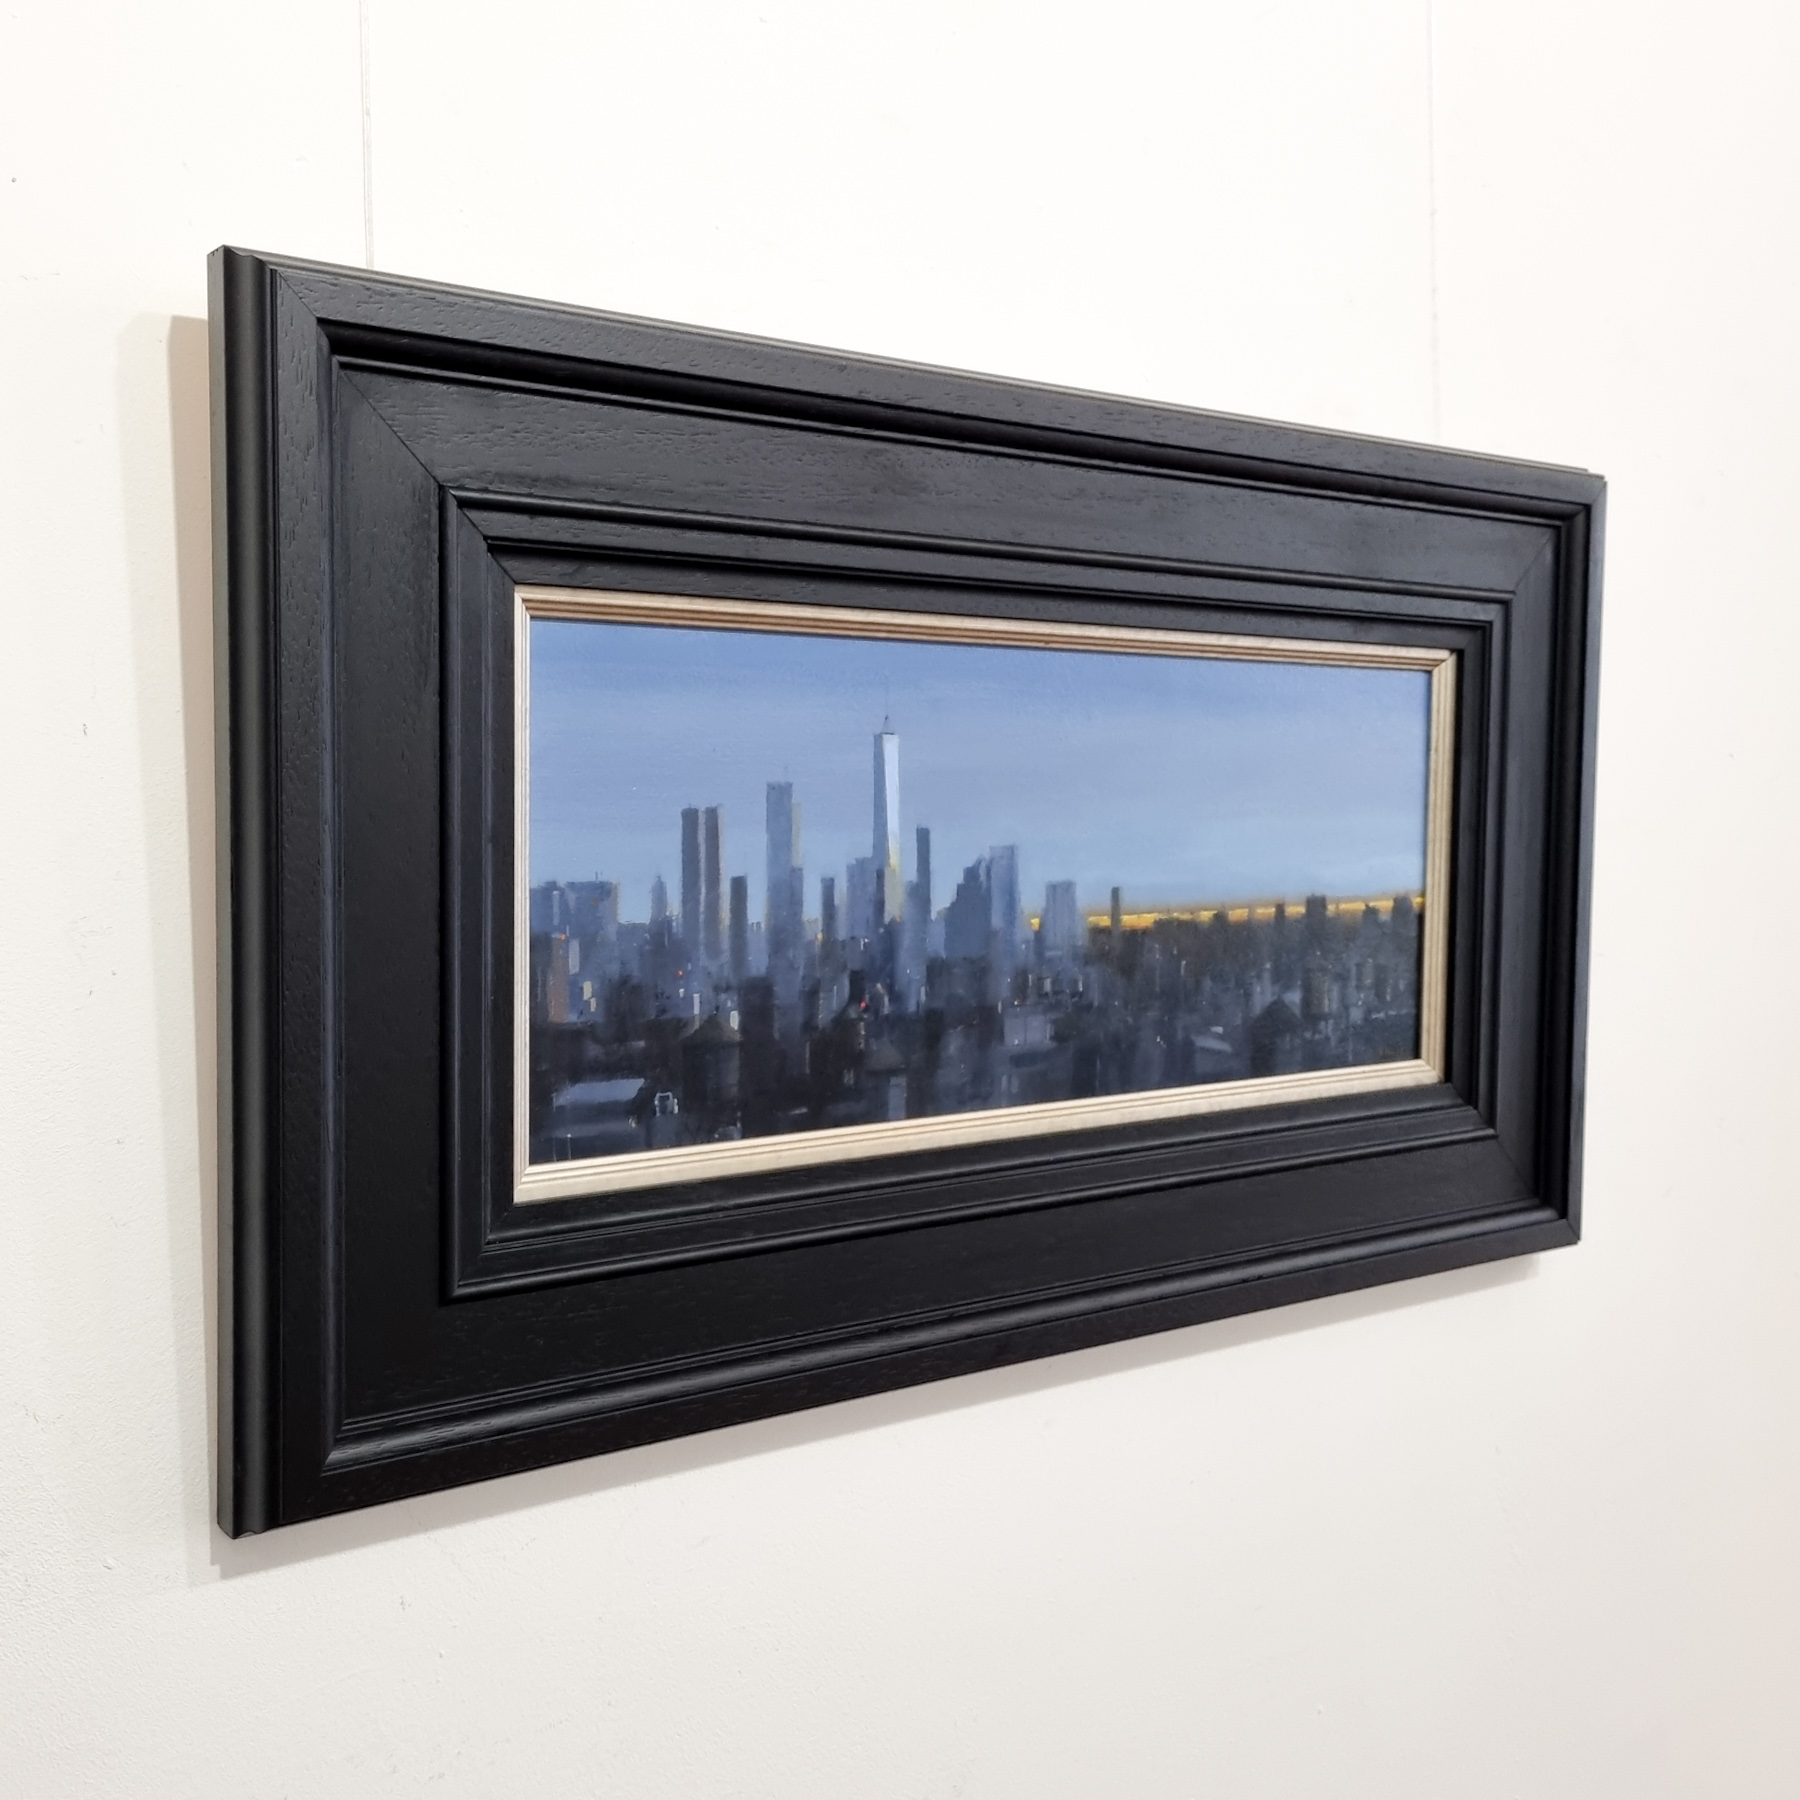 'NYC Sunset' by artist Michael Ashcroft ROI MAFA